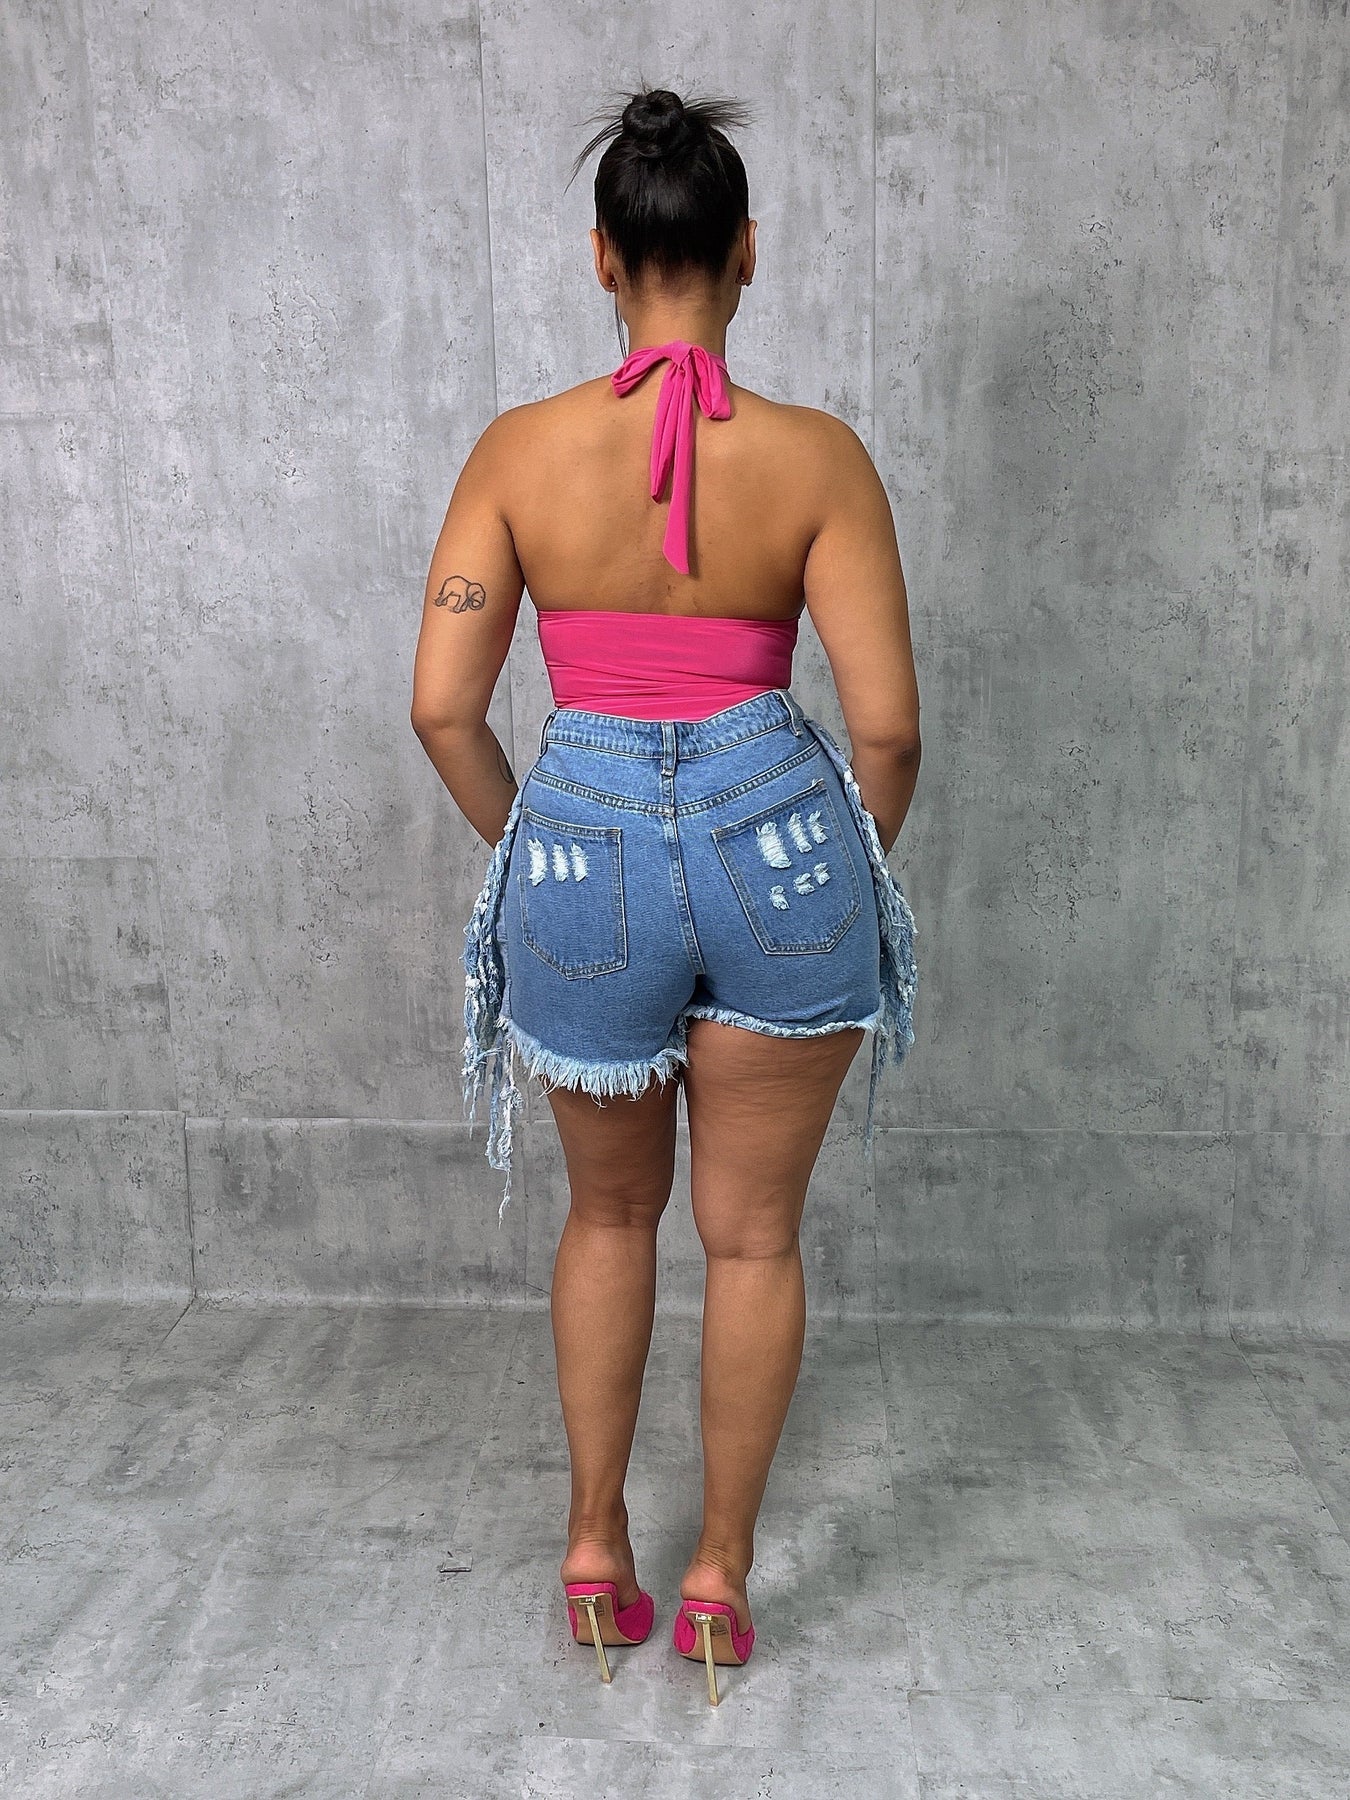 Pink Halter Backless Bodysuit - Mint Leafe Boutique 